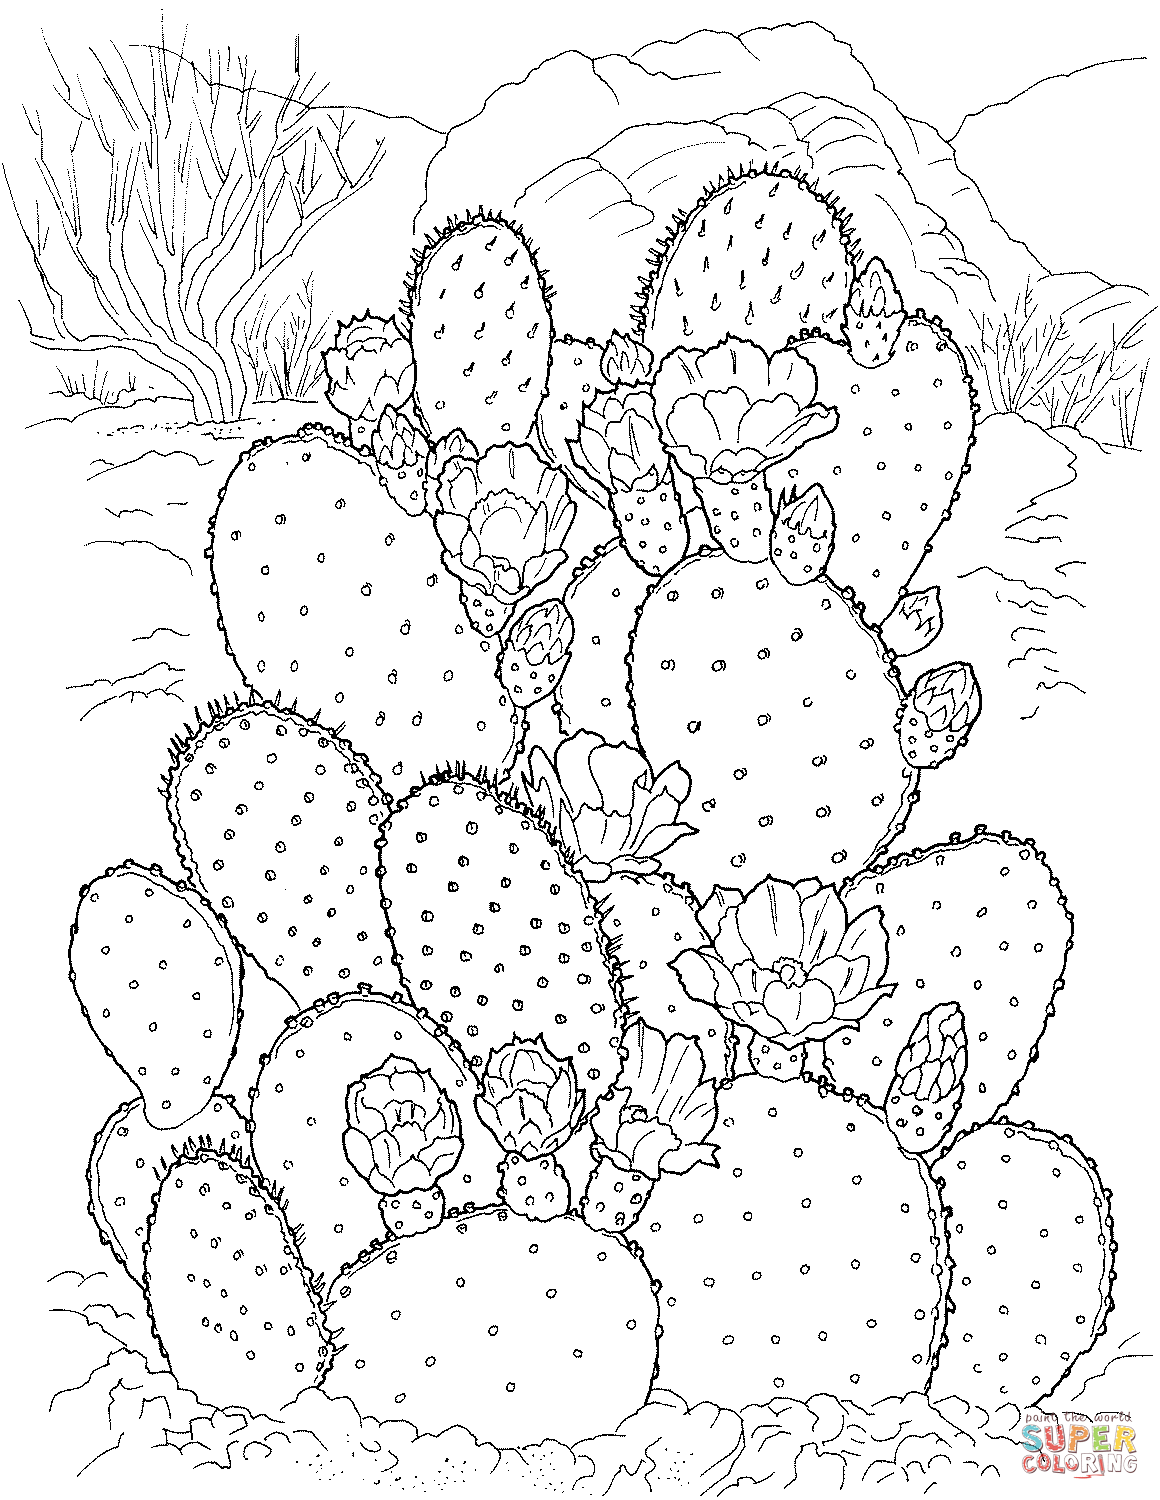 Cacto de pera espinhosa from Cactus